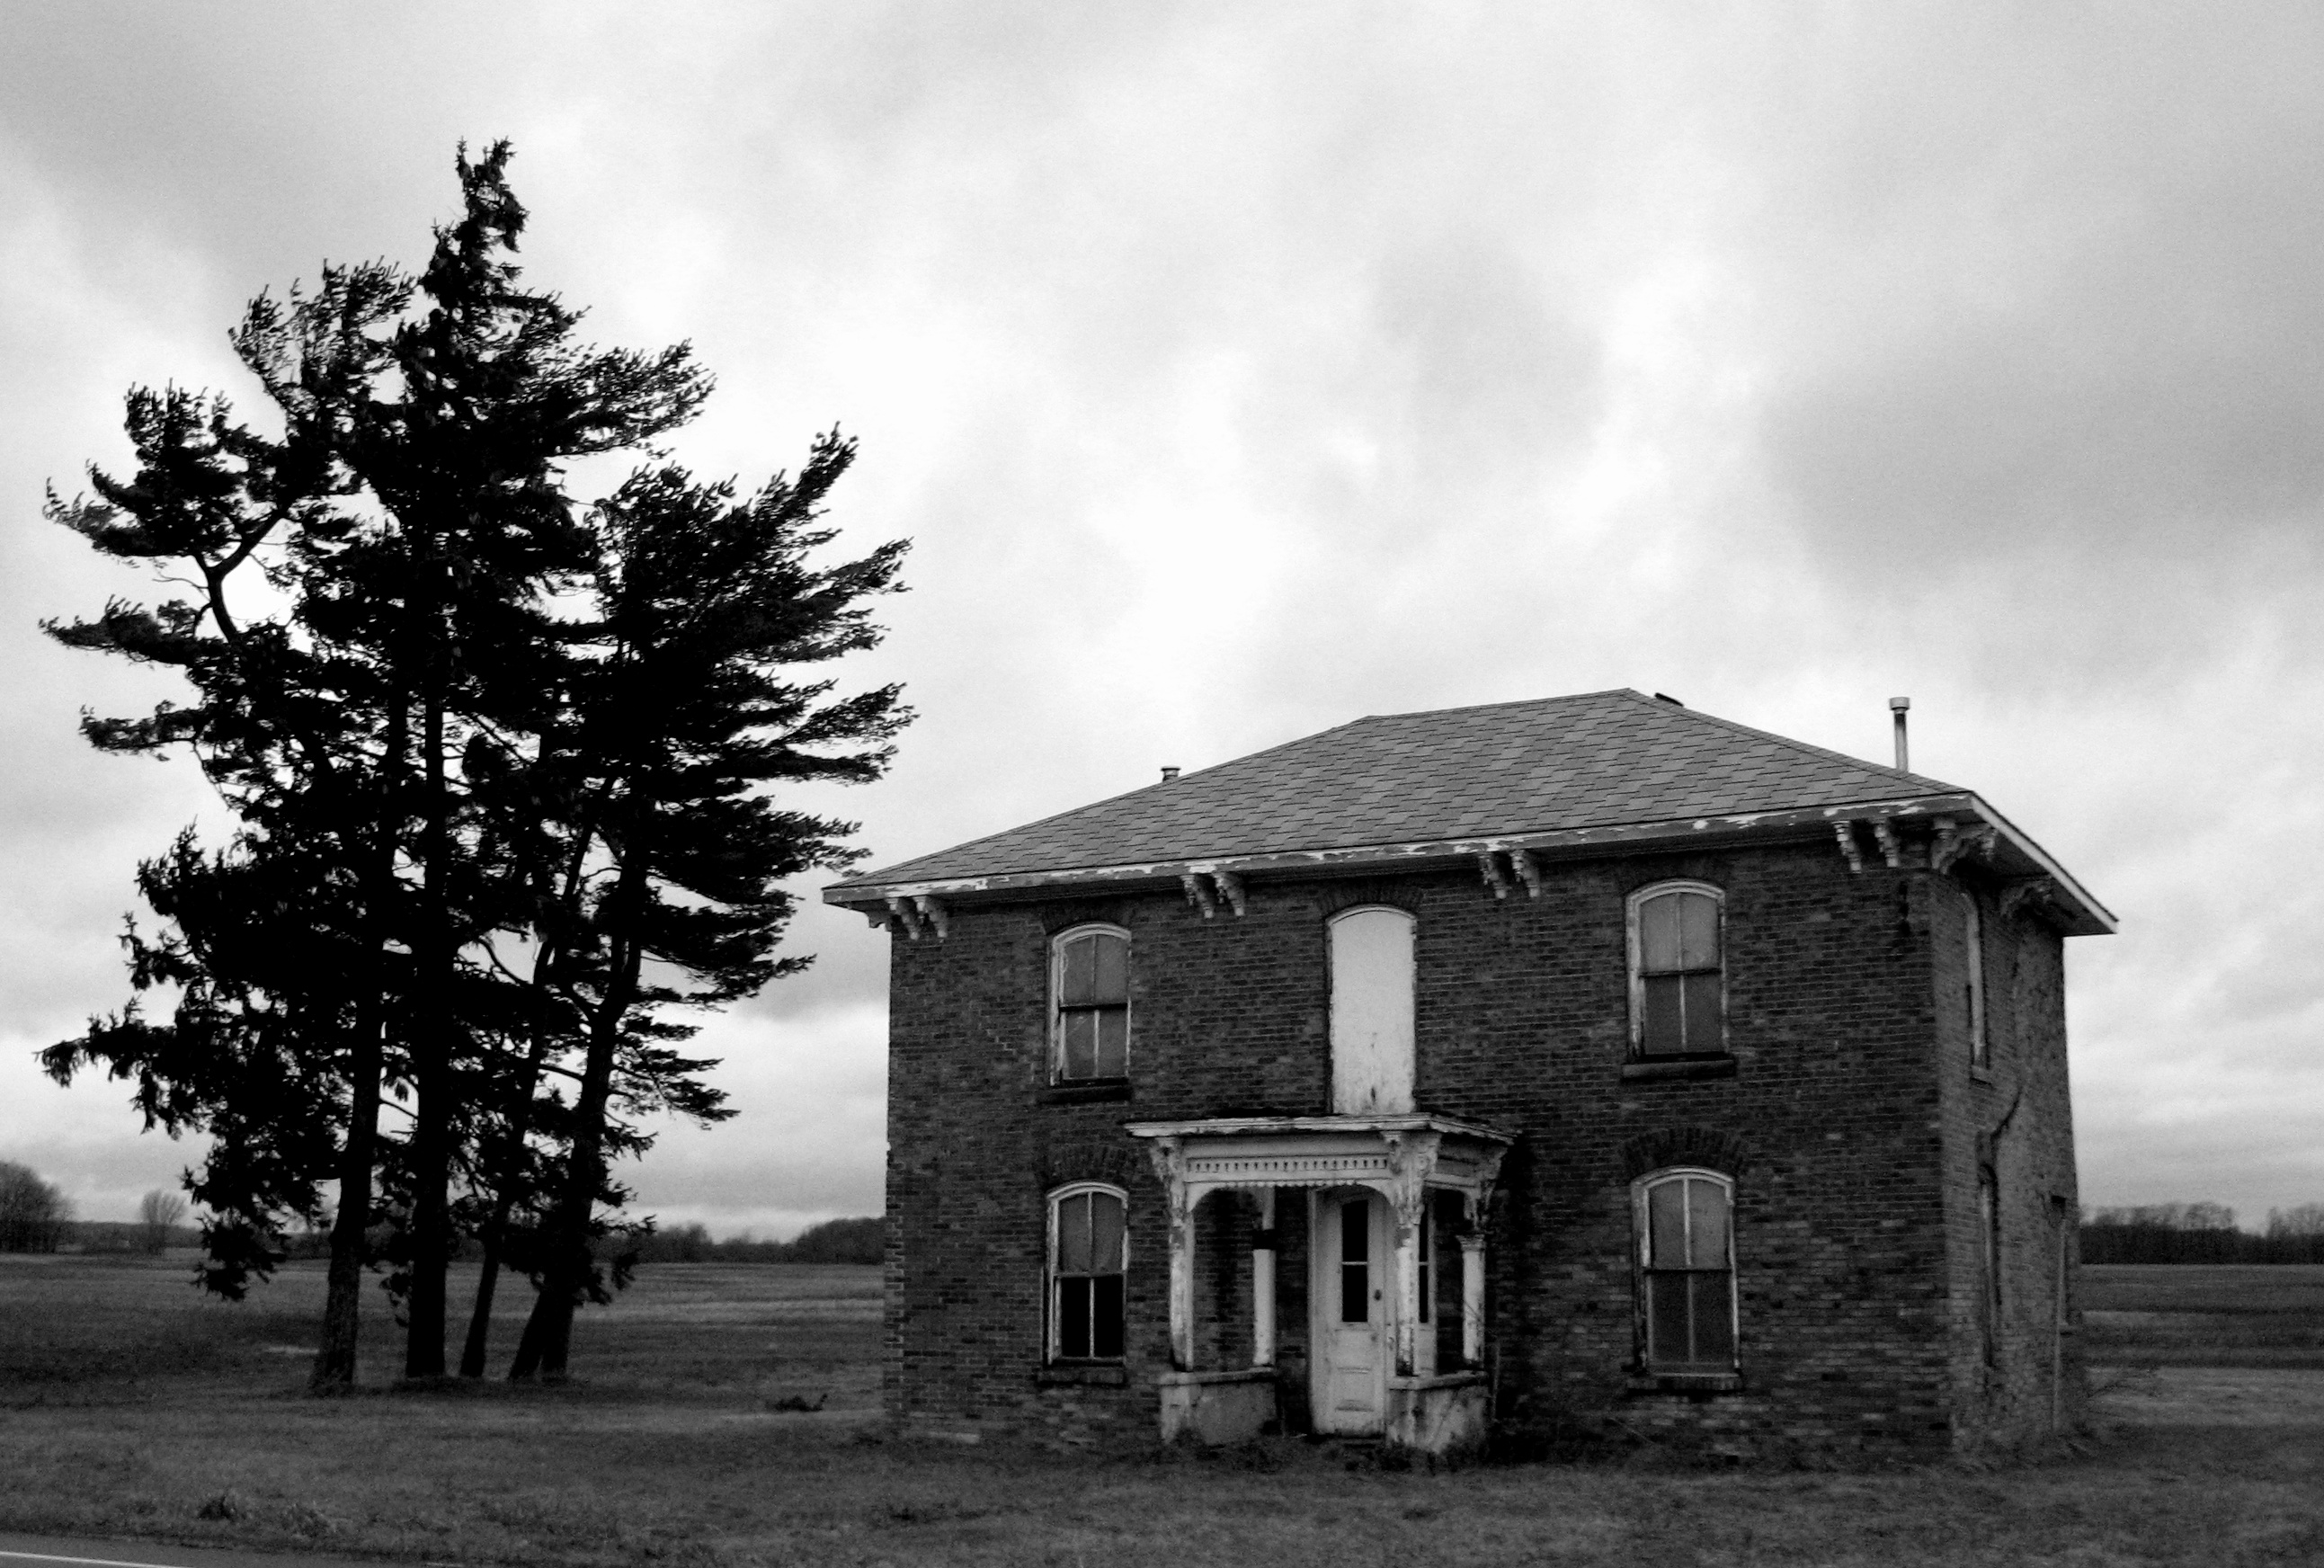 Abandoned house photo